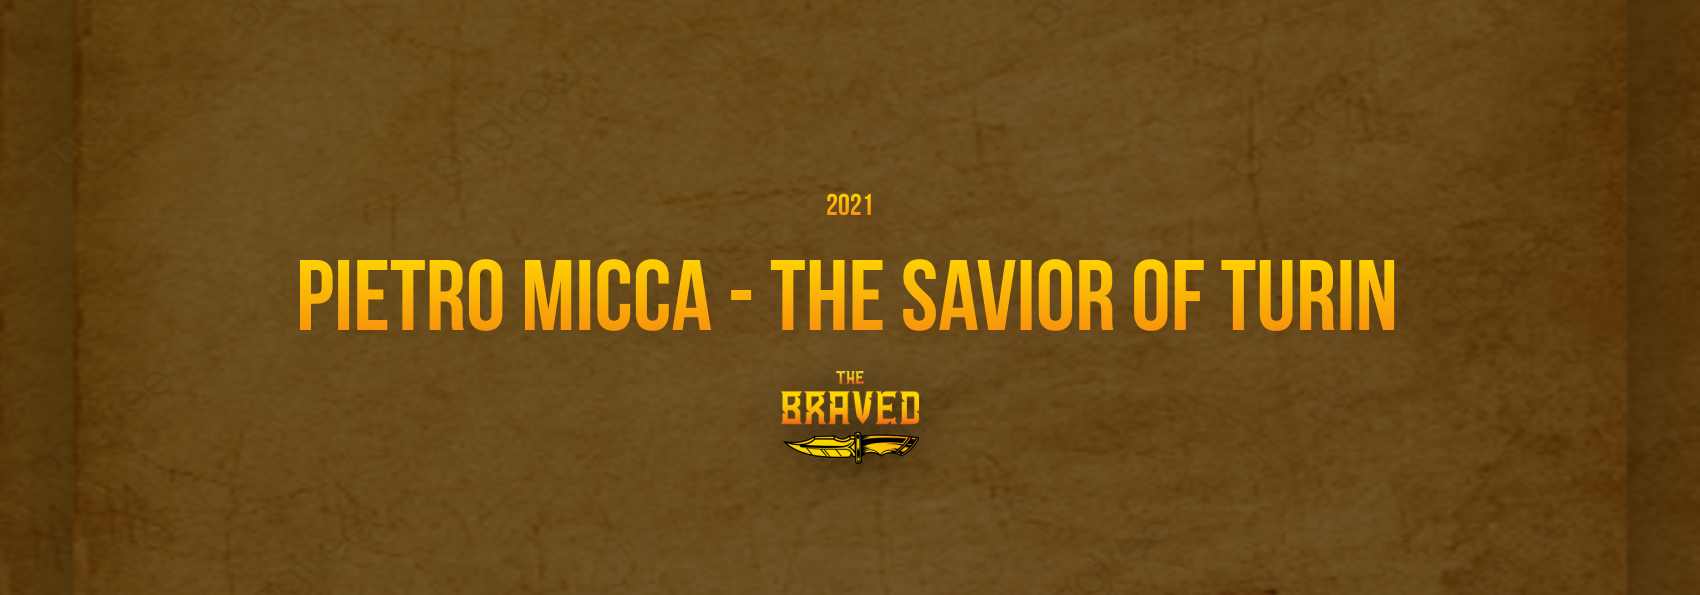 Pietro Micca - The Savior of Turin